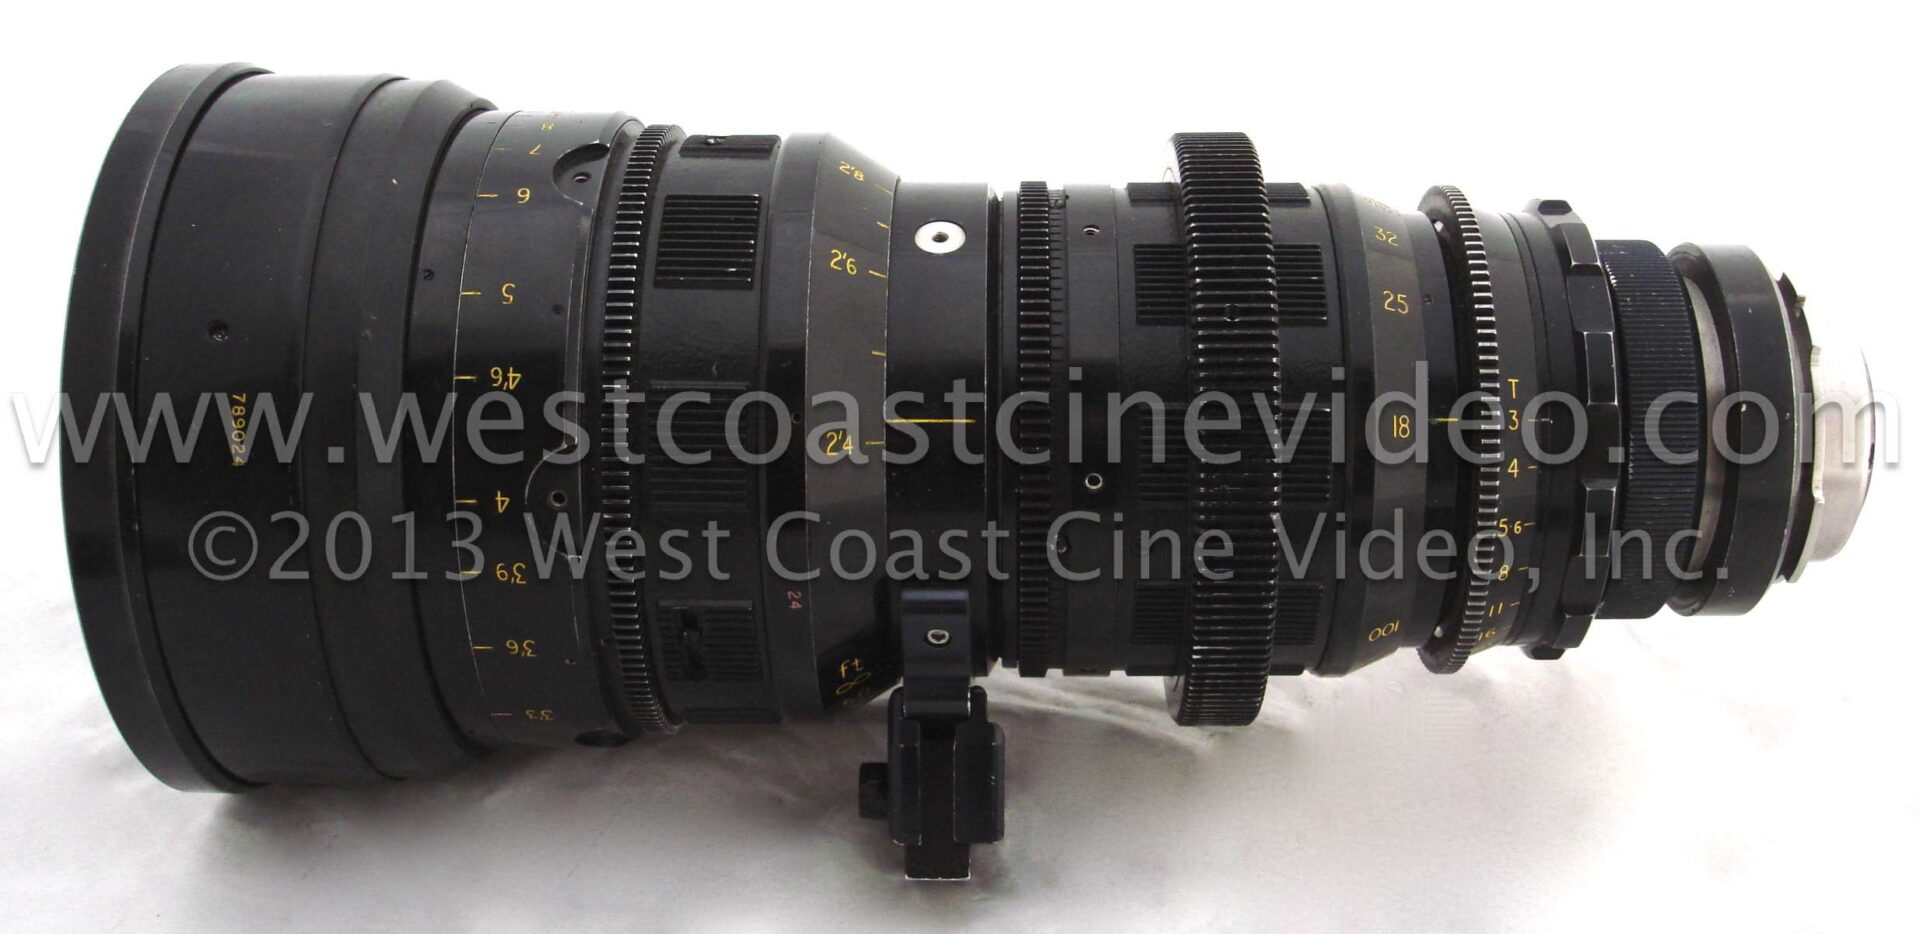 West Coast Cine Video, Inc